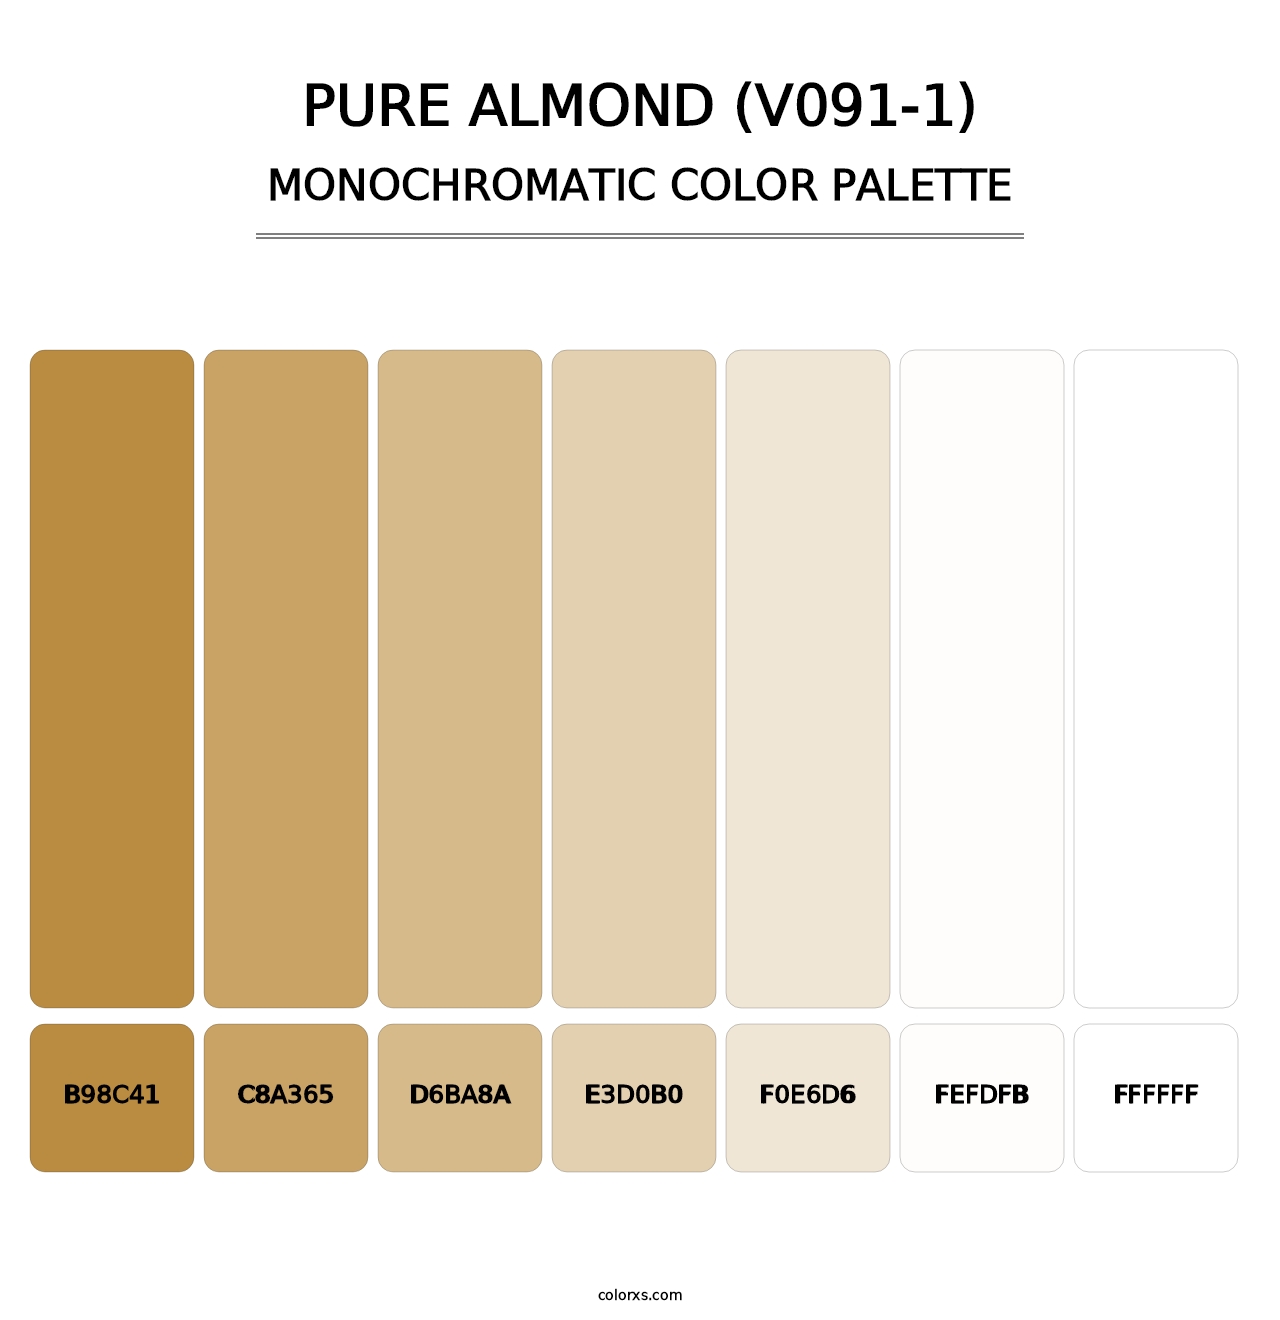 Pure Almond (V091-1) - Monochromatic Color Palette